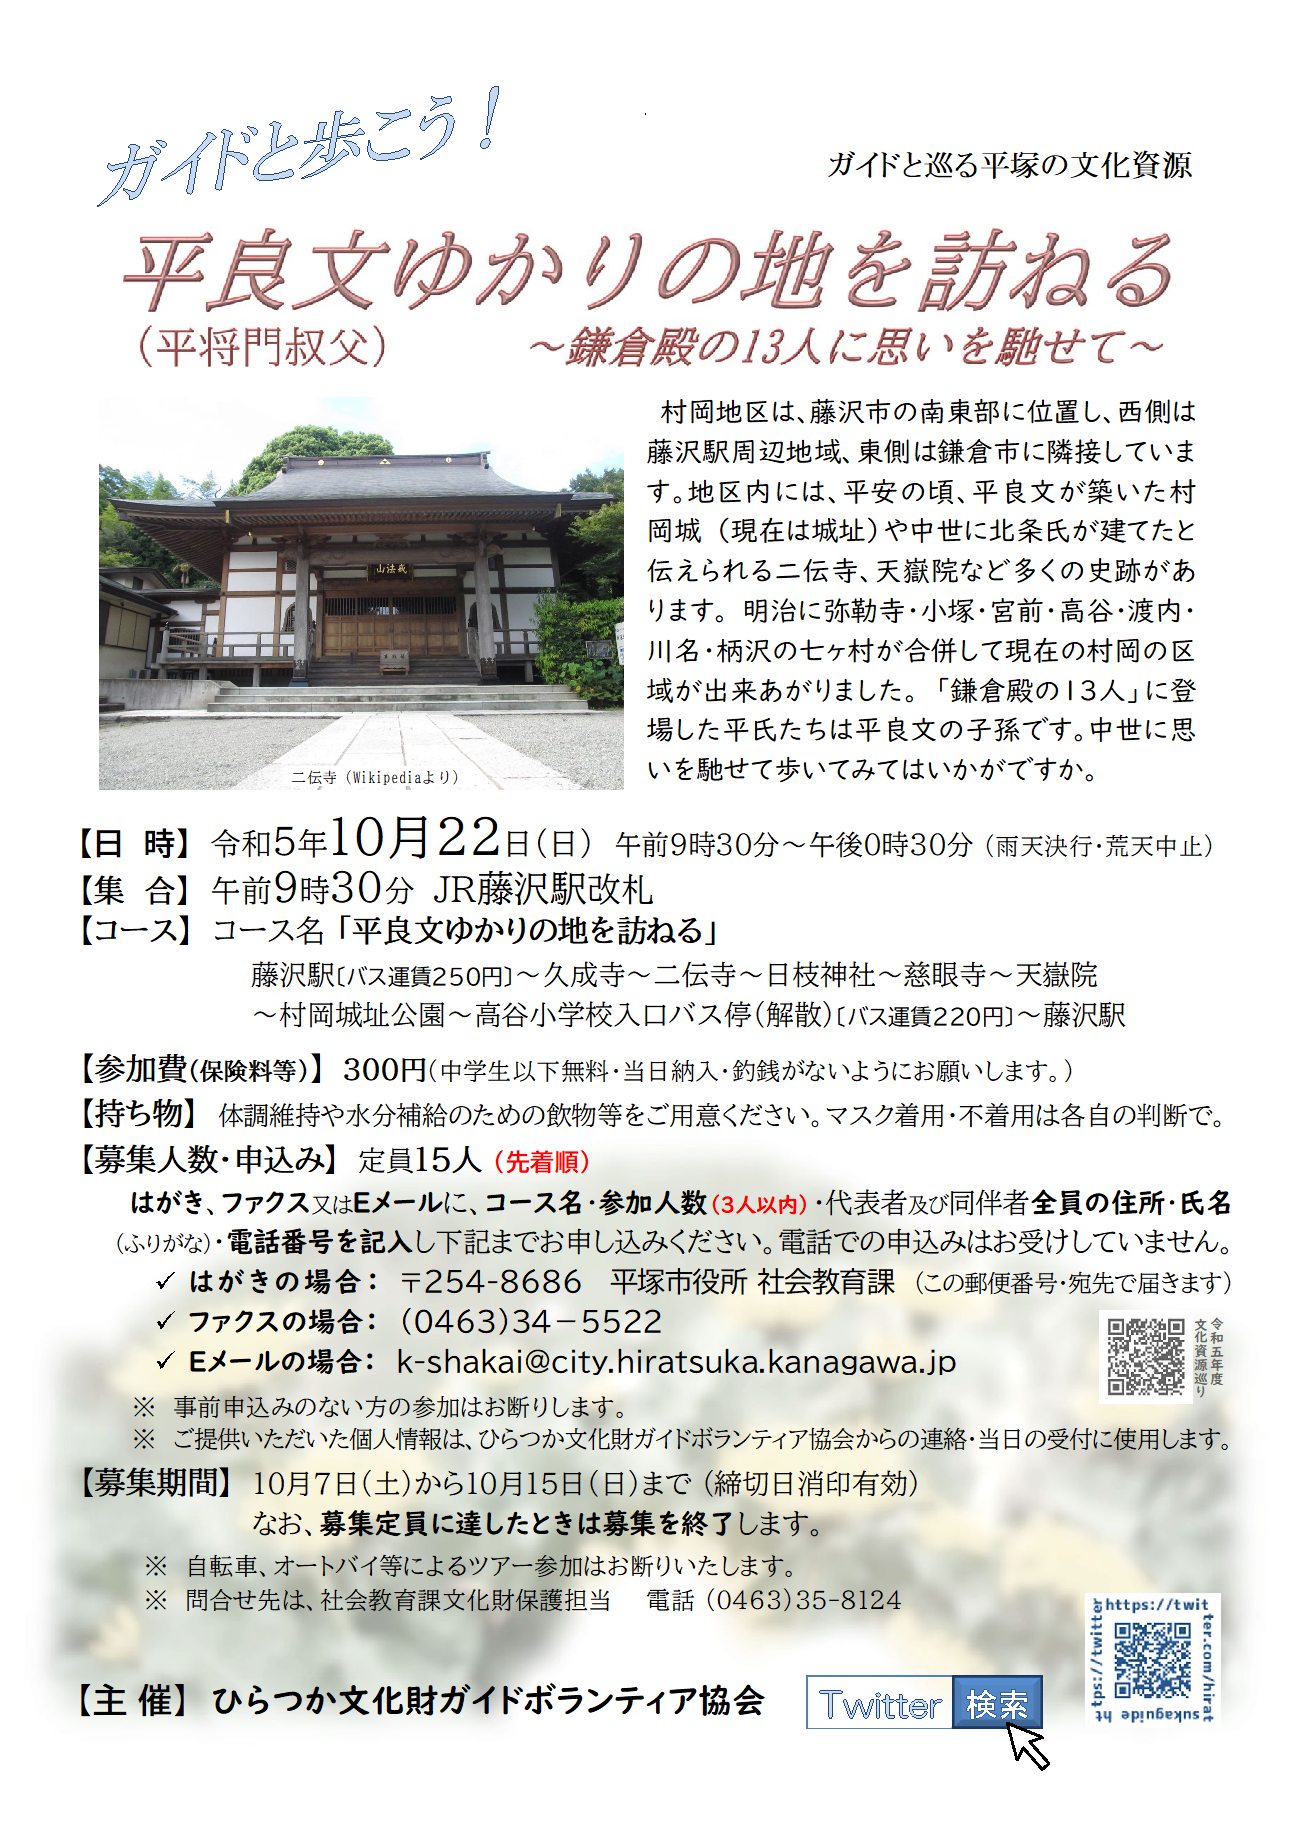 ガイドと巡る平塚の文化資源『平良文ゆかりの地を訪ねる』コース、10月22日 日曜日開催、申込先着順15人定員。